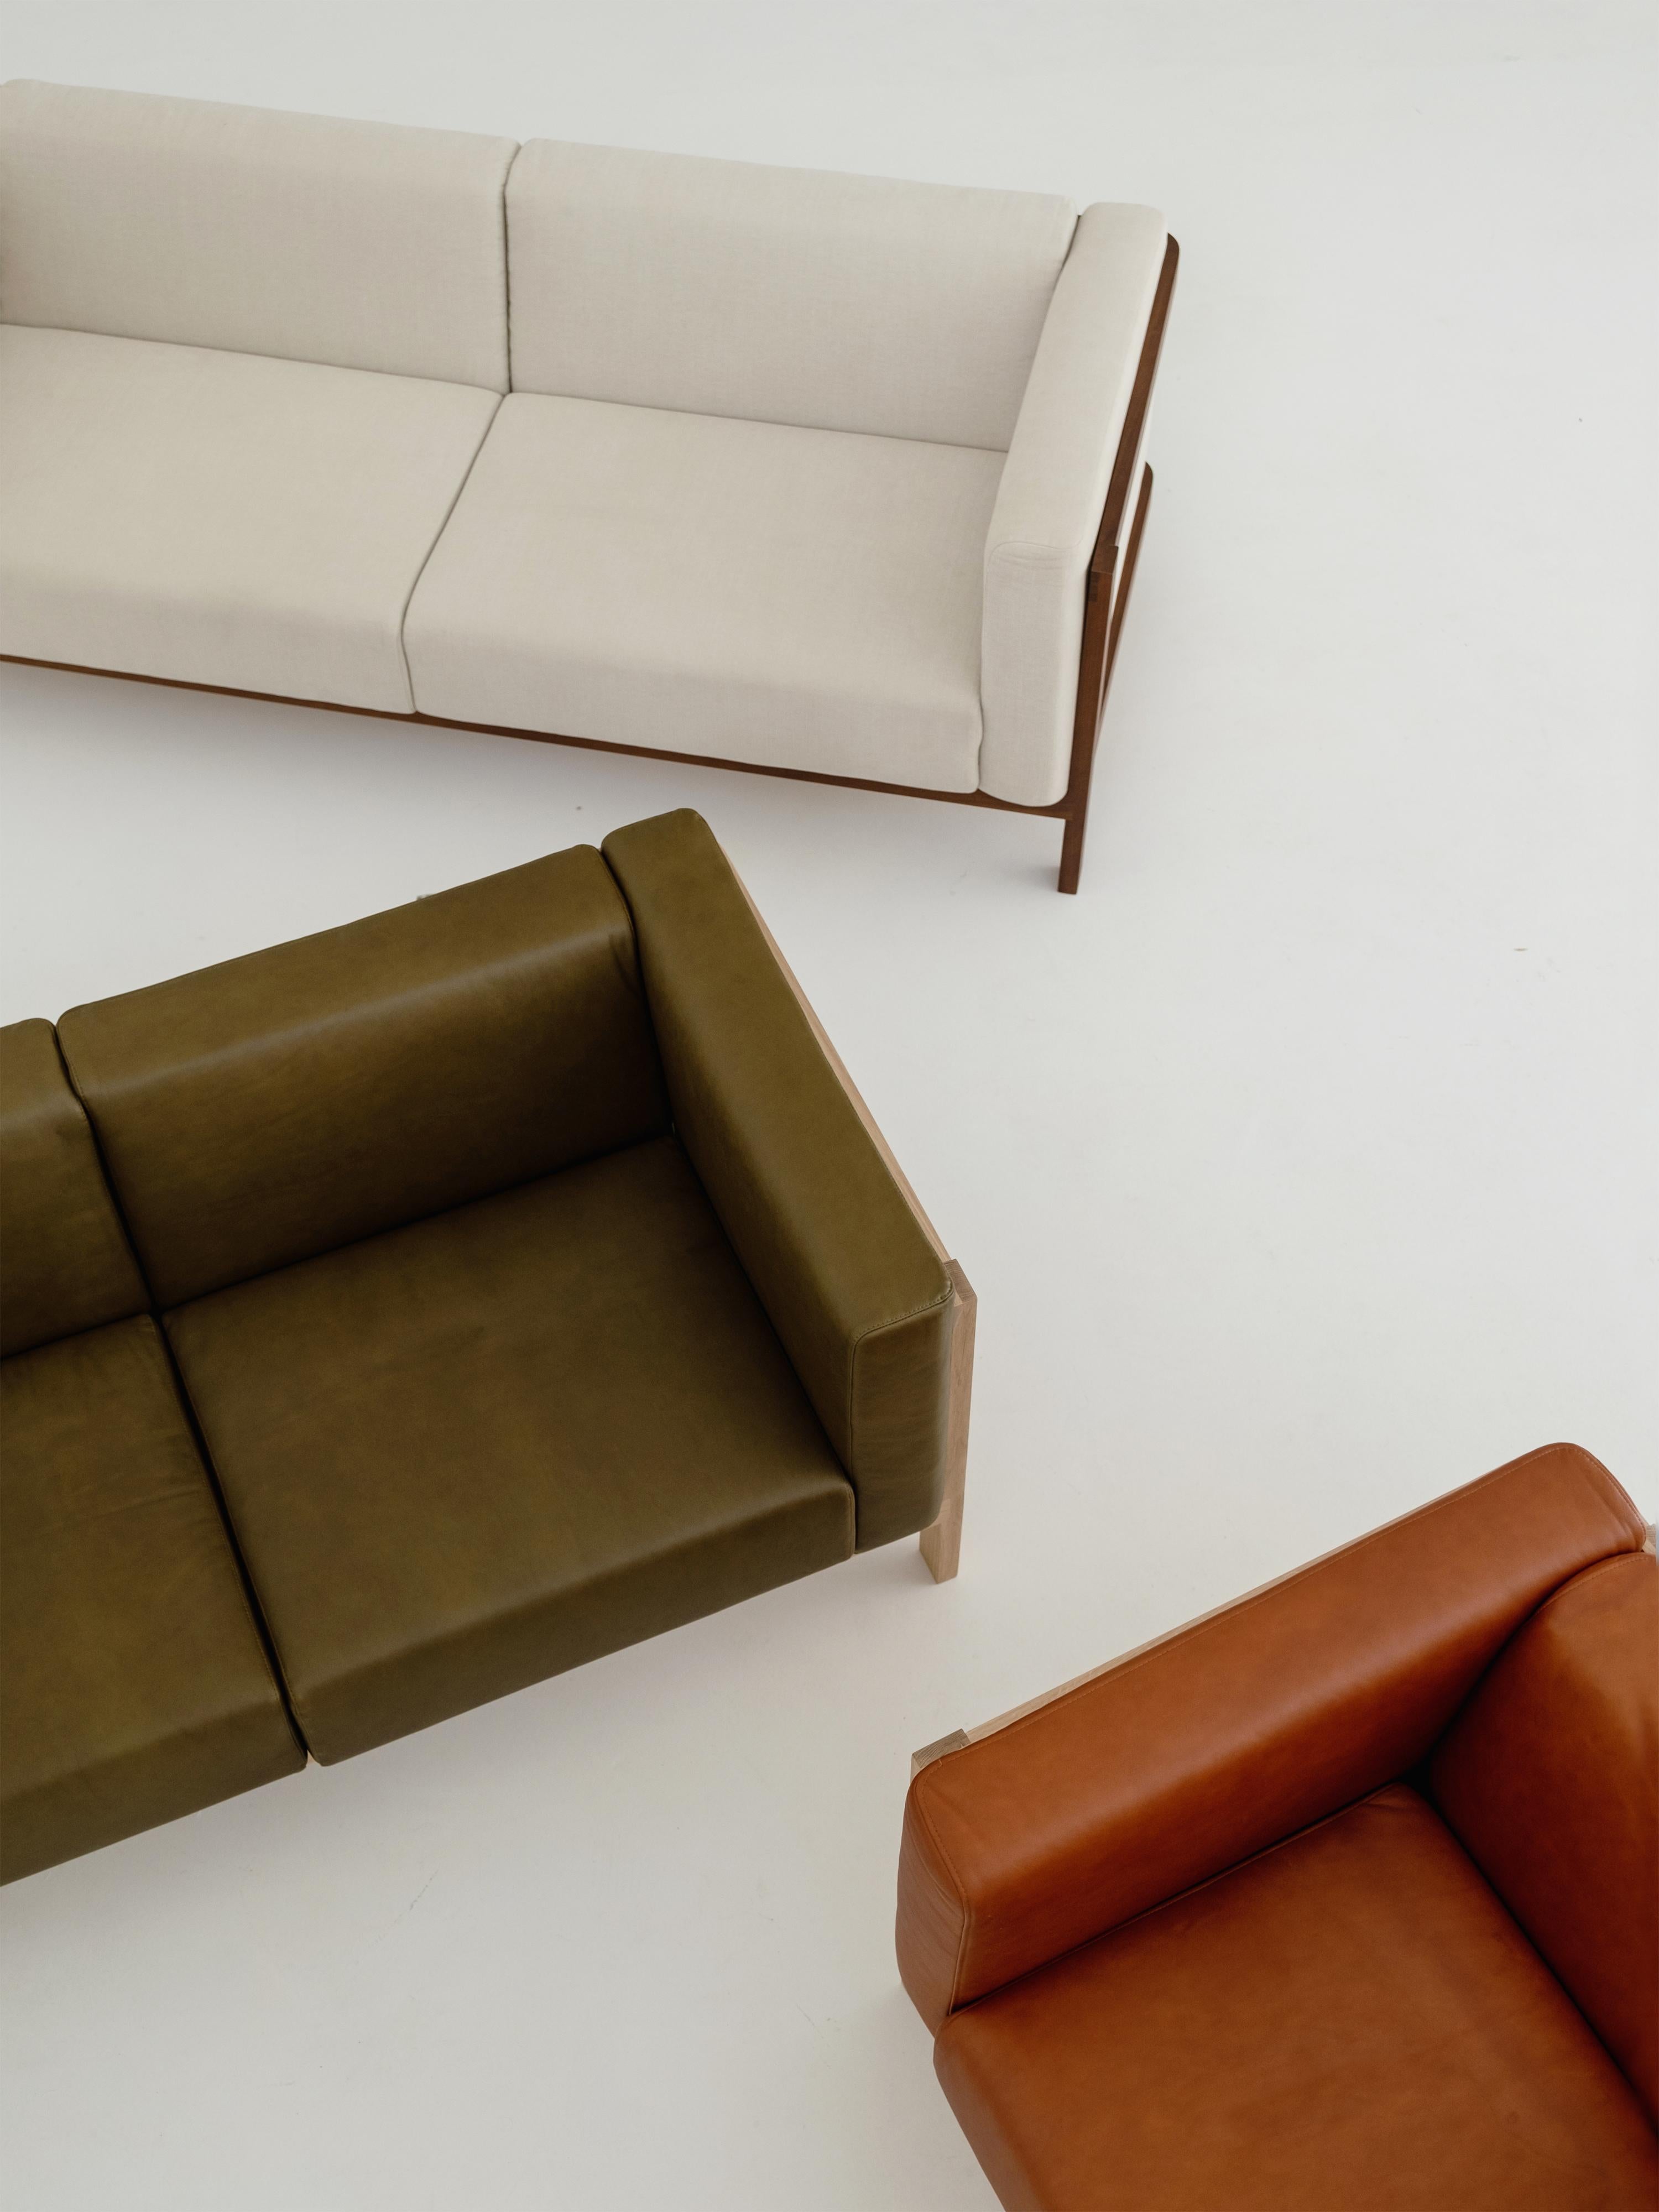 Inspiriert von der anmutigen Mechanik von Aufzügen, hat das Sofa LIFT sowohl seinen Namen als auch seine Ästhetik von diesem Einfluss. Dieses von Julien Renault entworfene Meisterwerk ist eine Hommage an raffiniertes Design, fachmännische